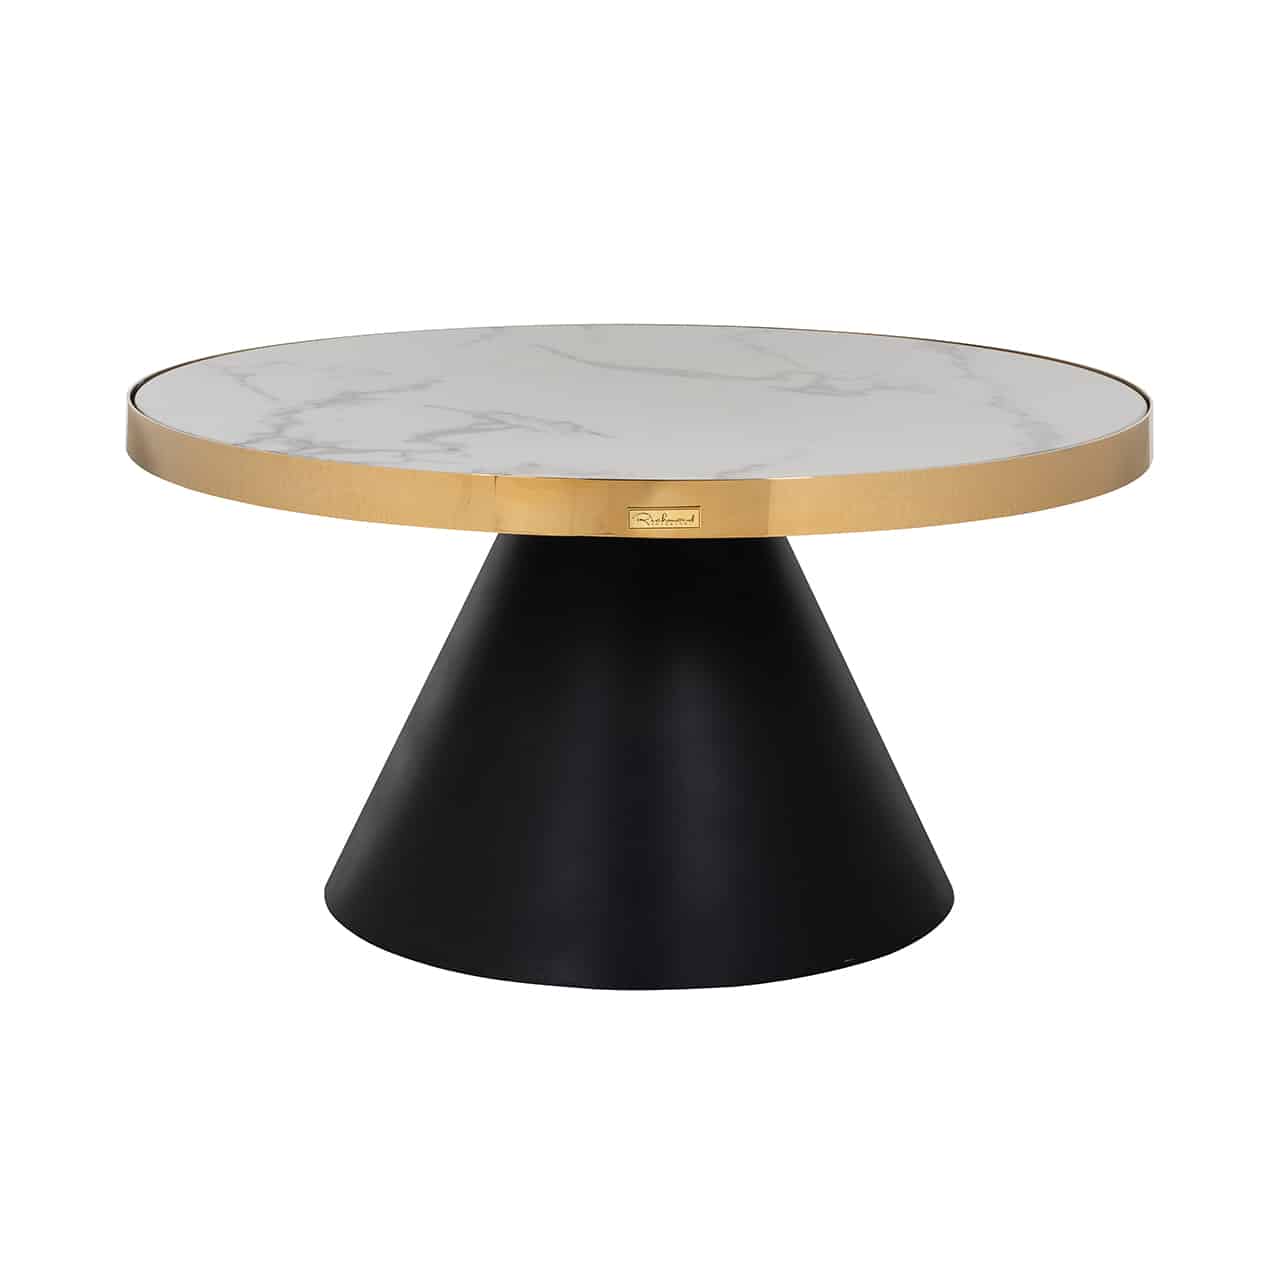 Couchtisch mit einem Fuß im Design eines breiten, abgeschnittenen Kegels, darauf eine runde, weiß marmorierte Platte, eingefasst von einem goldenen Ring.